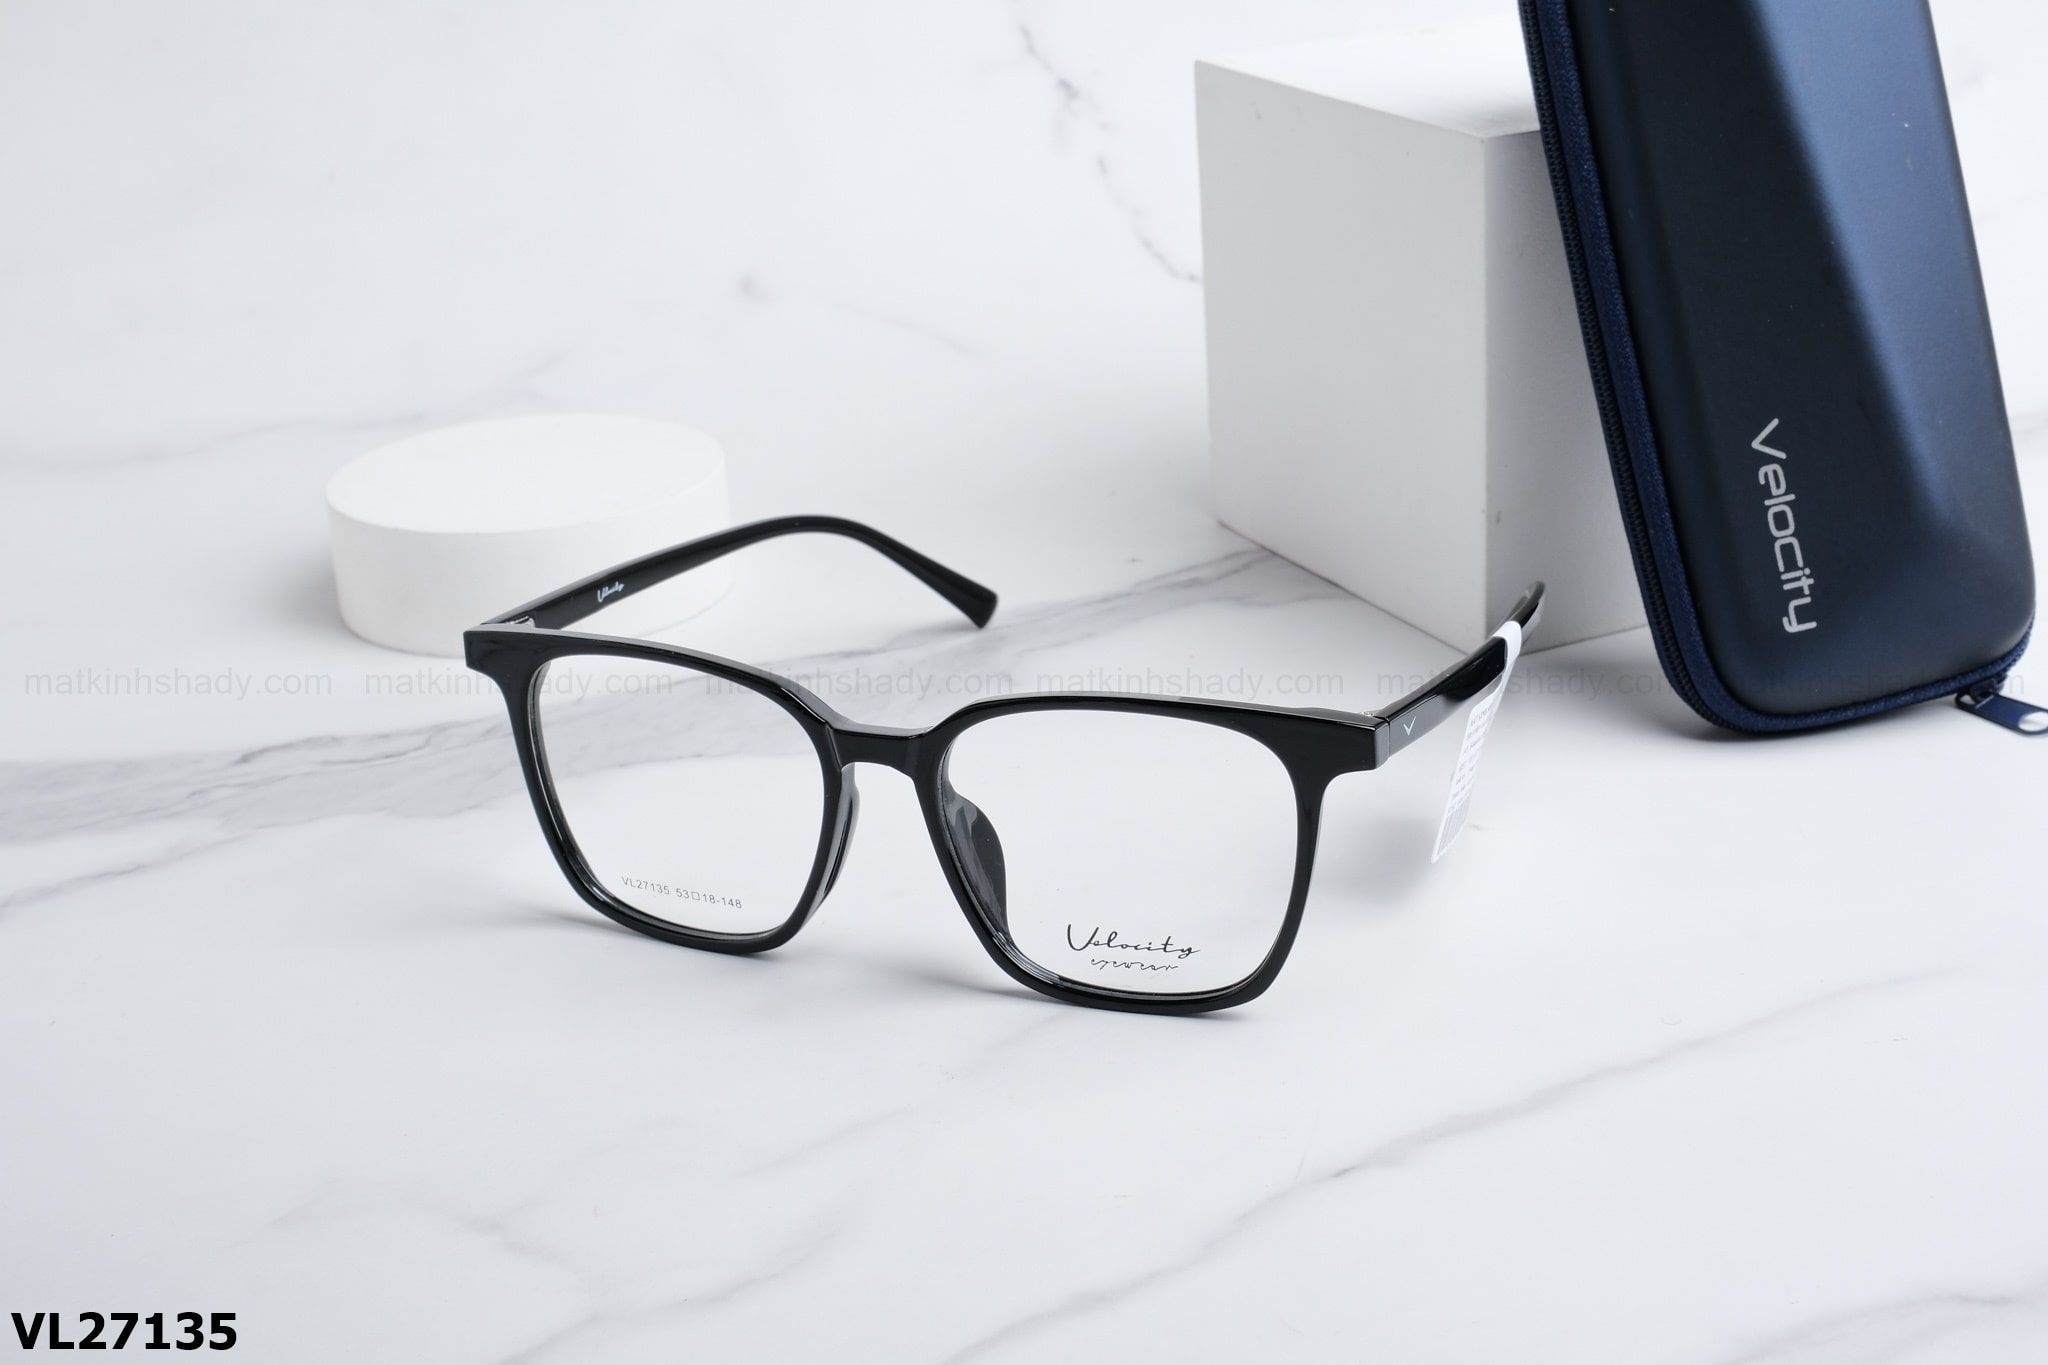  Velocity Eyewear - Glasses - VL27135 